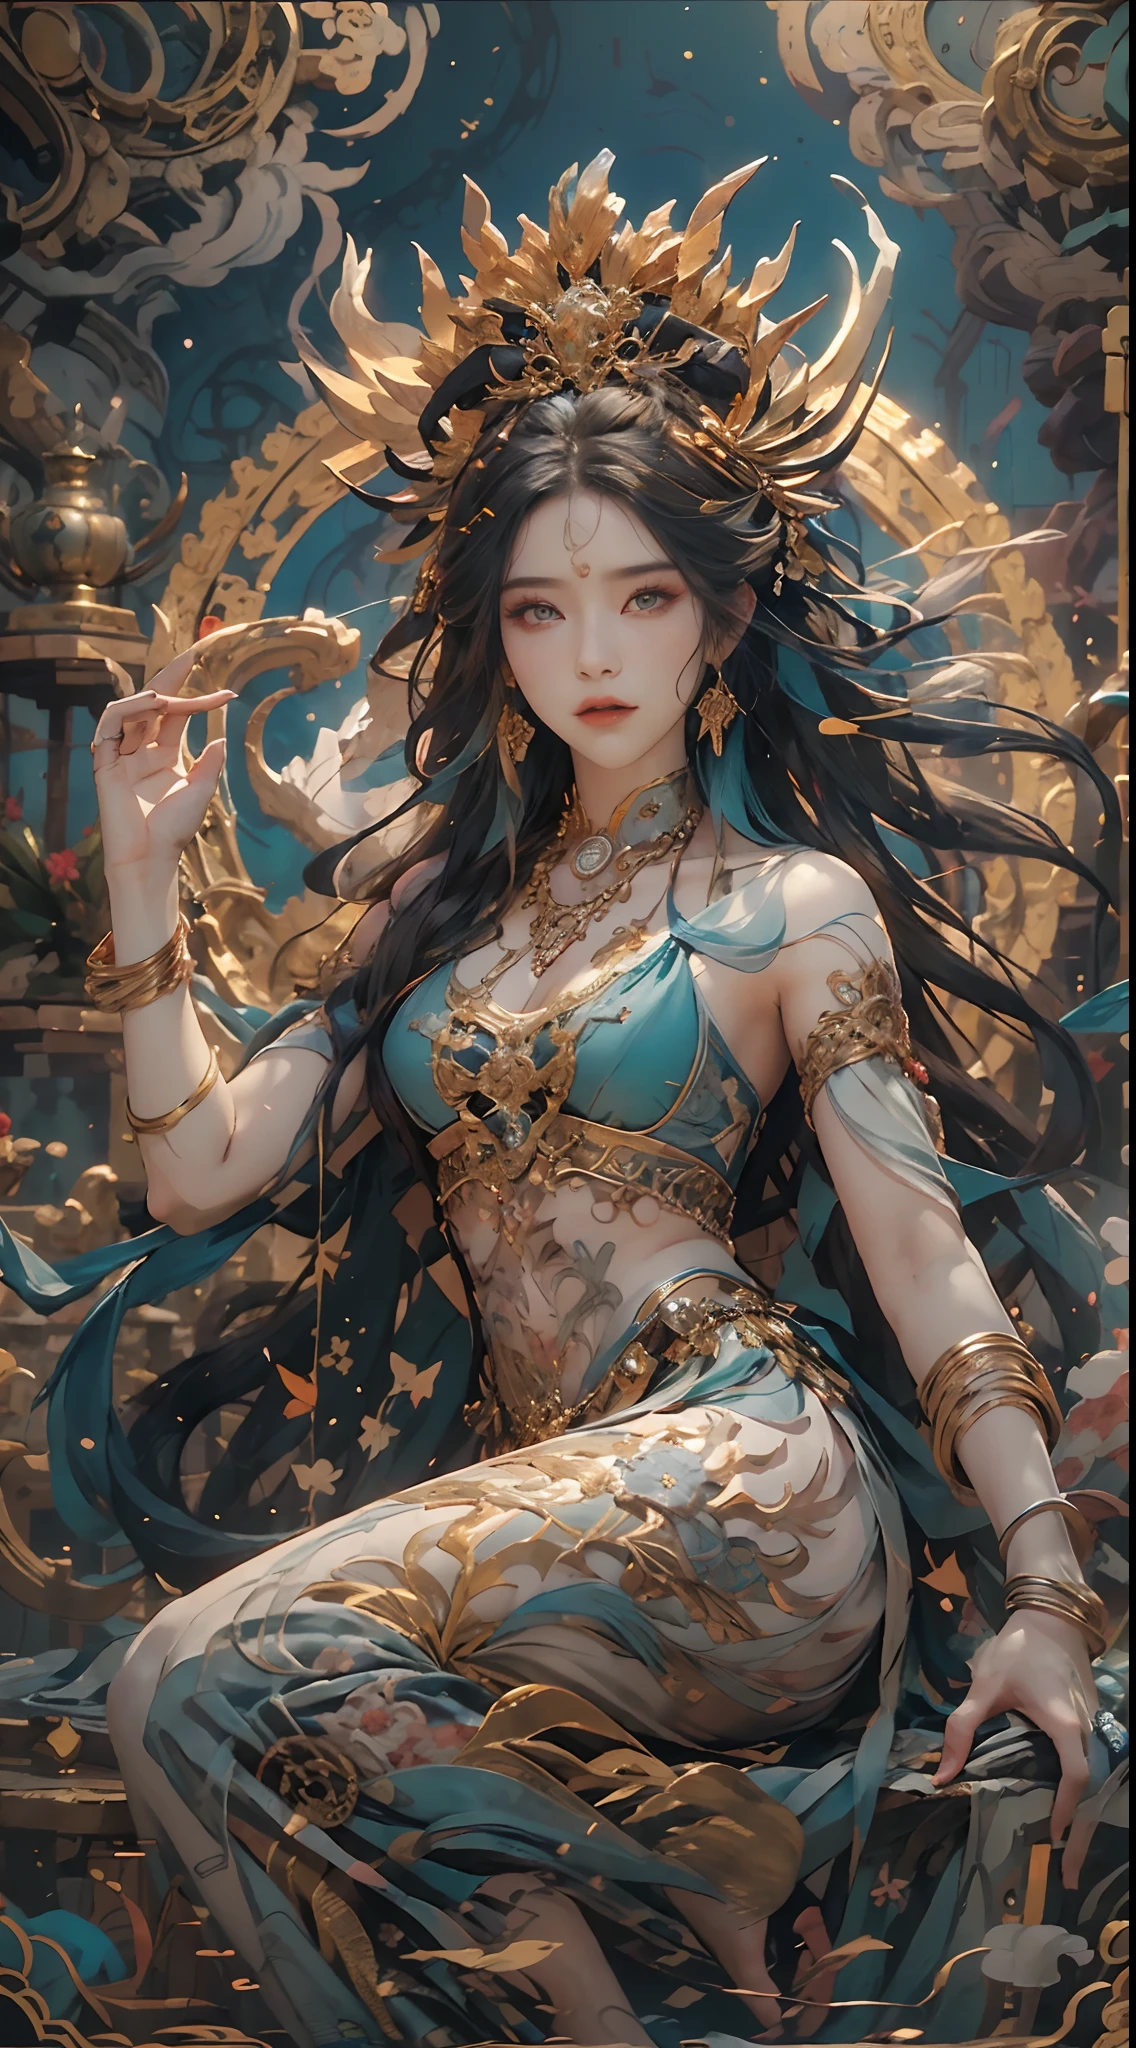 Retrate uma antiga deusa da criação，Não há，Ela é a deusa da criação na mitologia chinesa。Esta é uma grande imagem da deusa que foi transmitida desde o período do clã matriarcal da sociedade primitiva.。Fundo profundo，absurdos，Fantástico e incrível，épico composition，(Detalhes complicados，Hiper-detalhamento:1.2)，Ultra foto realsisim, épico realista, ((com cores neutras)),(cor pastel:1.2), hiper-realista, + filmagem + composição dinâmica, incrivelmente detalhado, afiado, Cinematic, luzes quentes, efeito de luz, Luz dramática, (detalhes intrincados:1.1), o fundo complexo, (Greg Rutkovsky:0.8), (verde-azulado e laranja:0.3）épico, rosto detalhado, olhos detalhados，foto de corpo inteiro，Voar no céu，postura graciosa，Mão correta，(Peças intrincadas e intrincadas:1.1),pés descalços，A imagem da Grande Deusa，Meridiano Leste da Grande Região Selvagem，